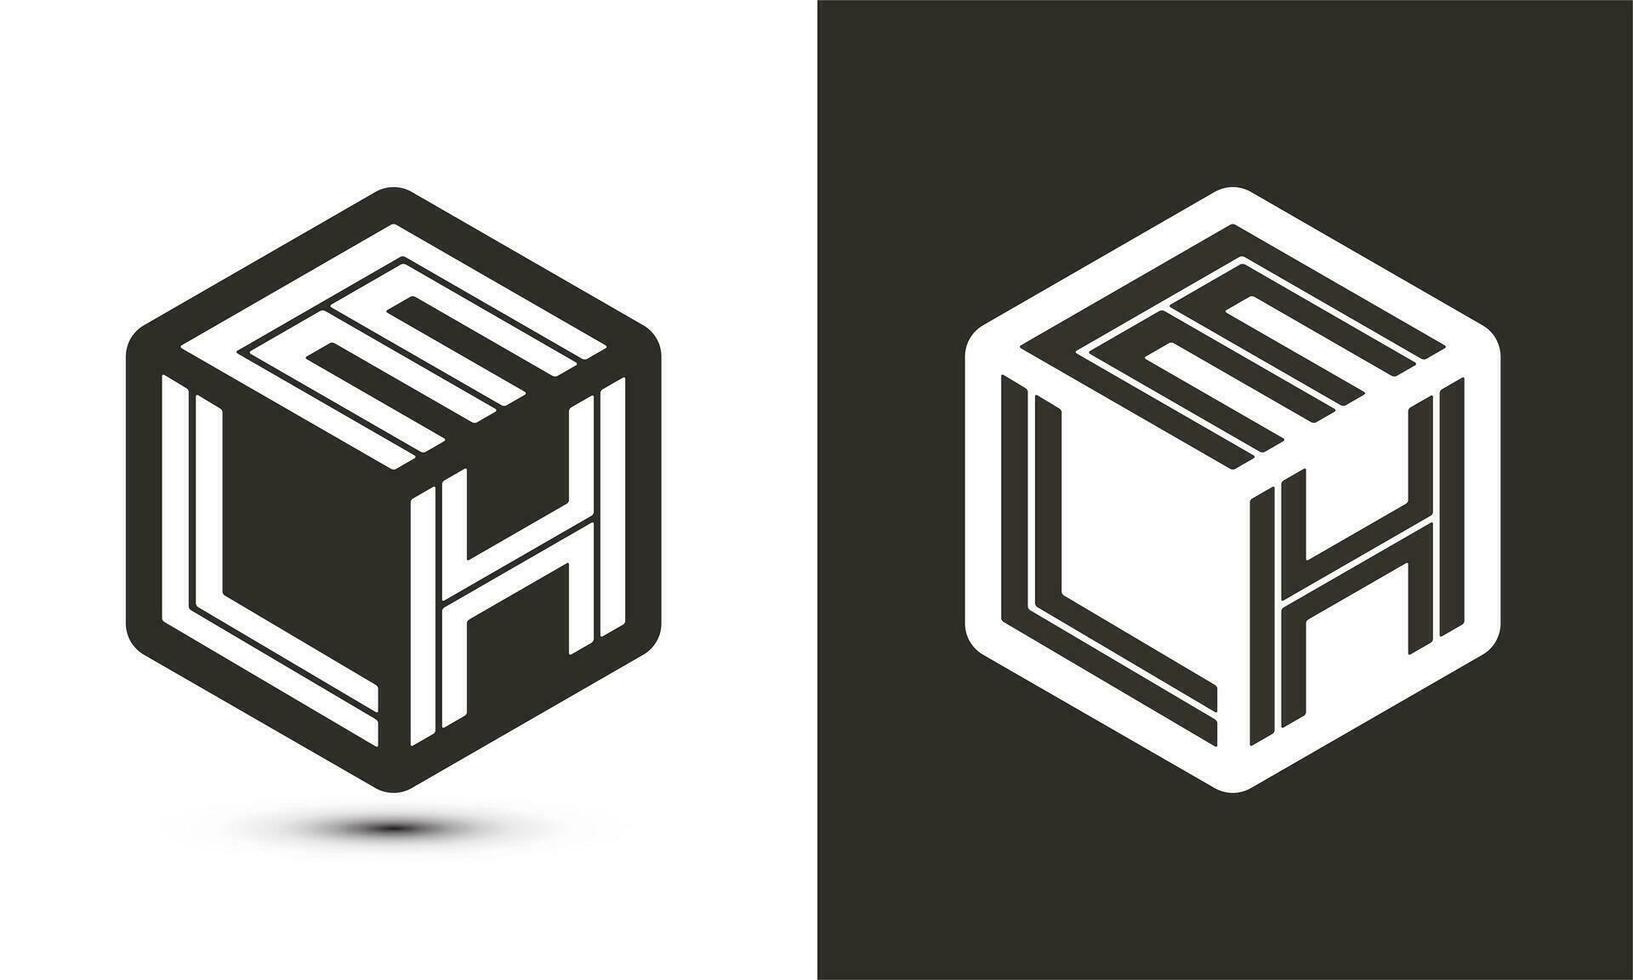 elh brief logo ontwerp met illustrator kubus logo, vector logo modern alfabet doopvont overlappen stijl.